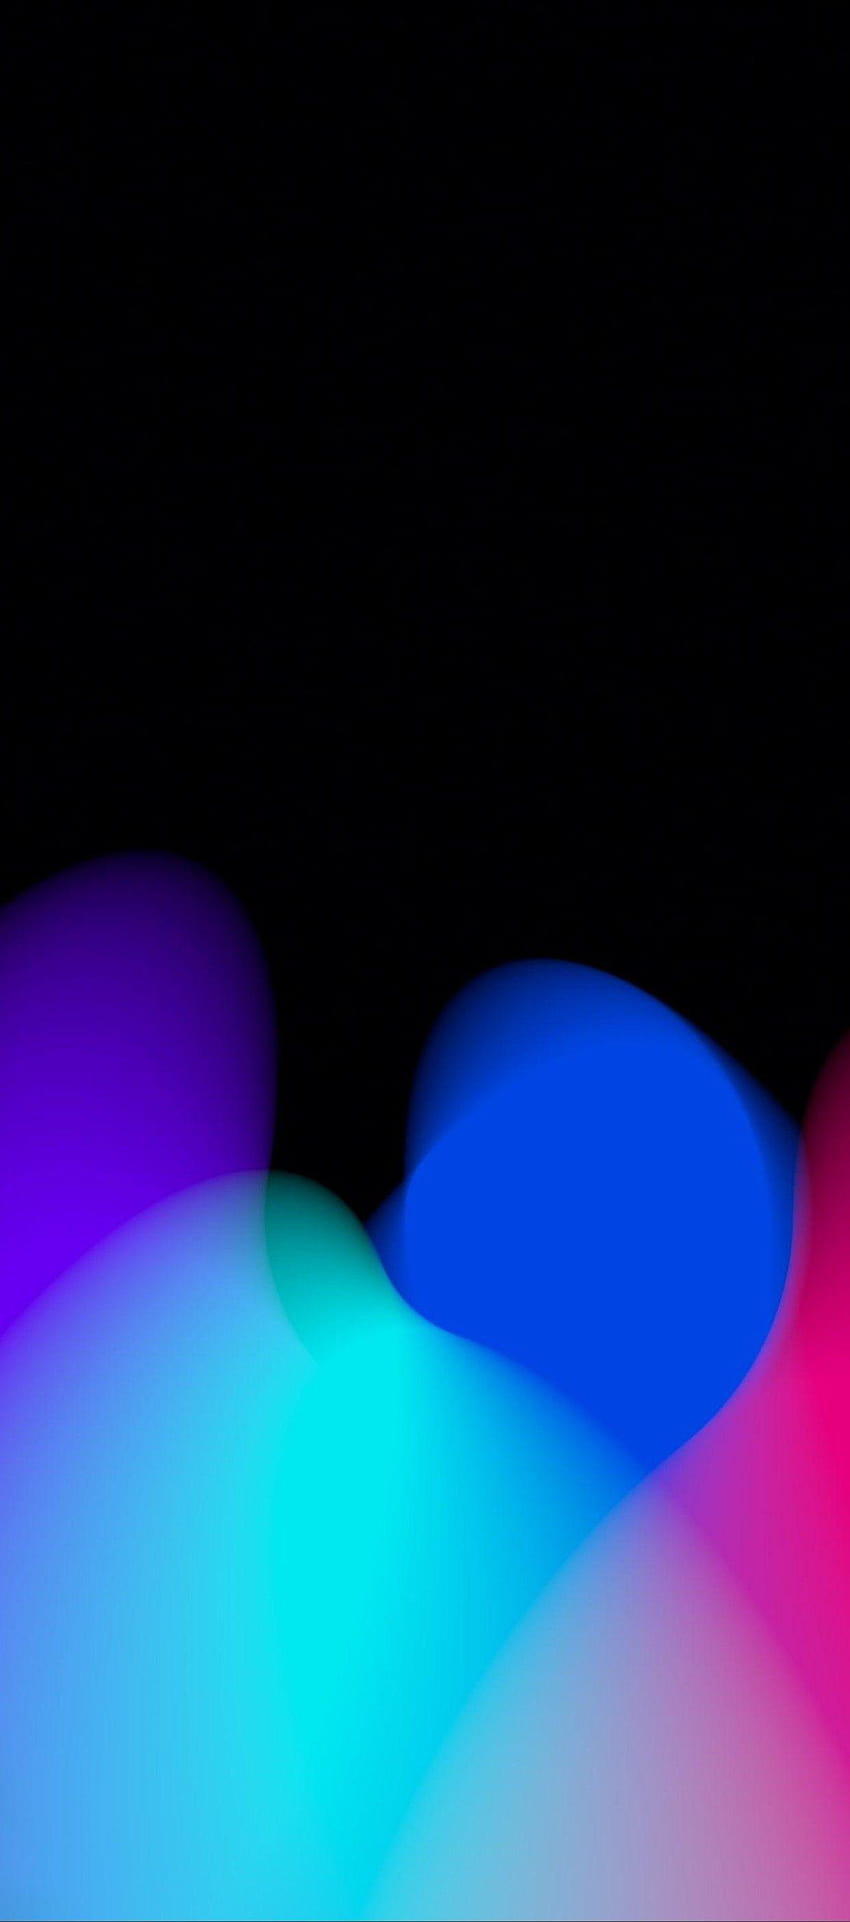 iOS 11, iPhone X, 검은색, 빨간색, 보라색, 파란색, 깨끗하고 단순하고 추상적이며 파란색과 빨간색 조명 HD 전화 배경 화면